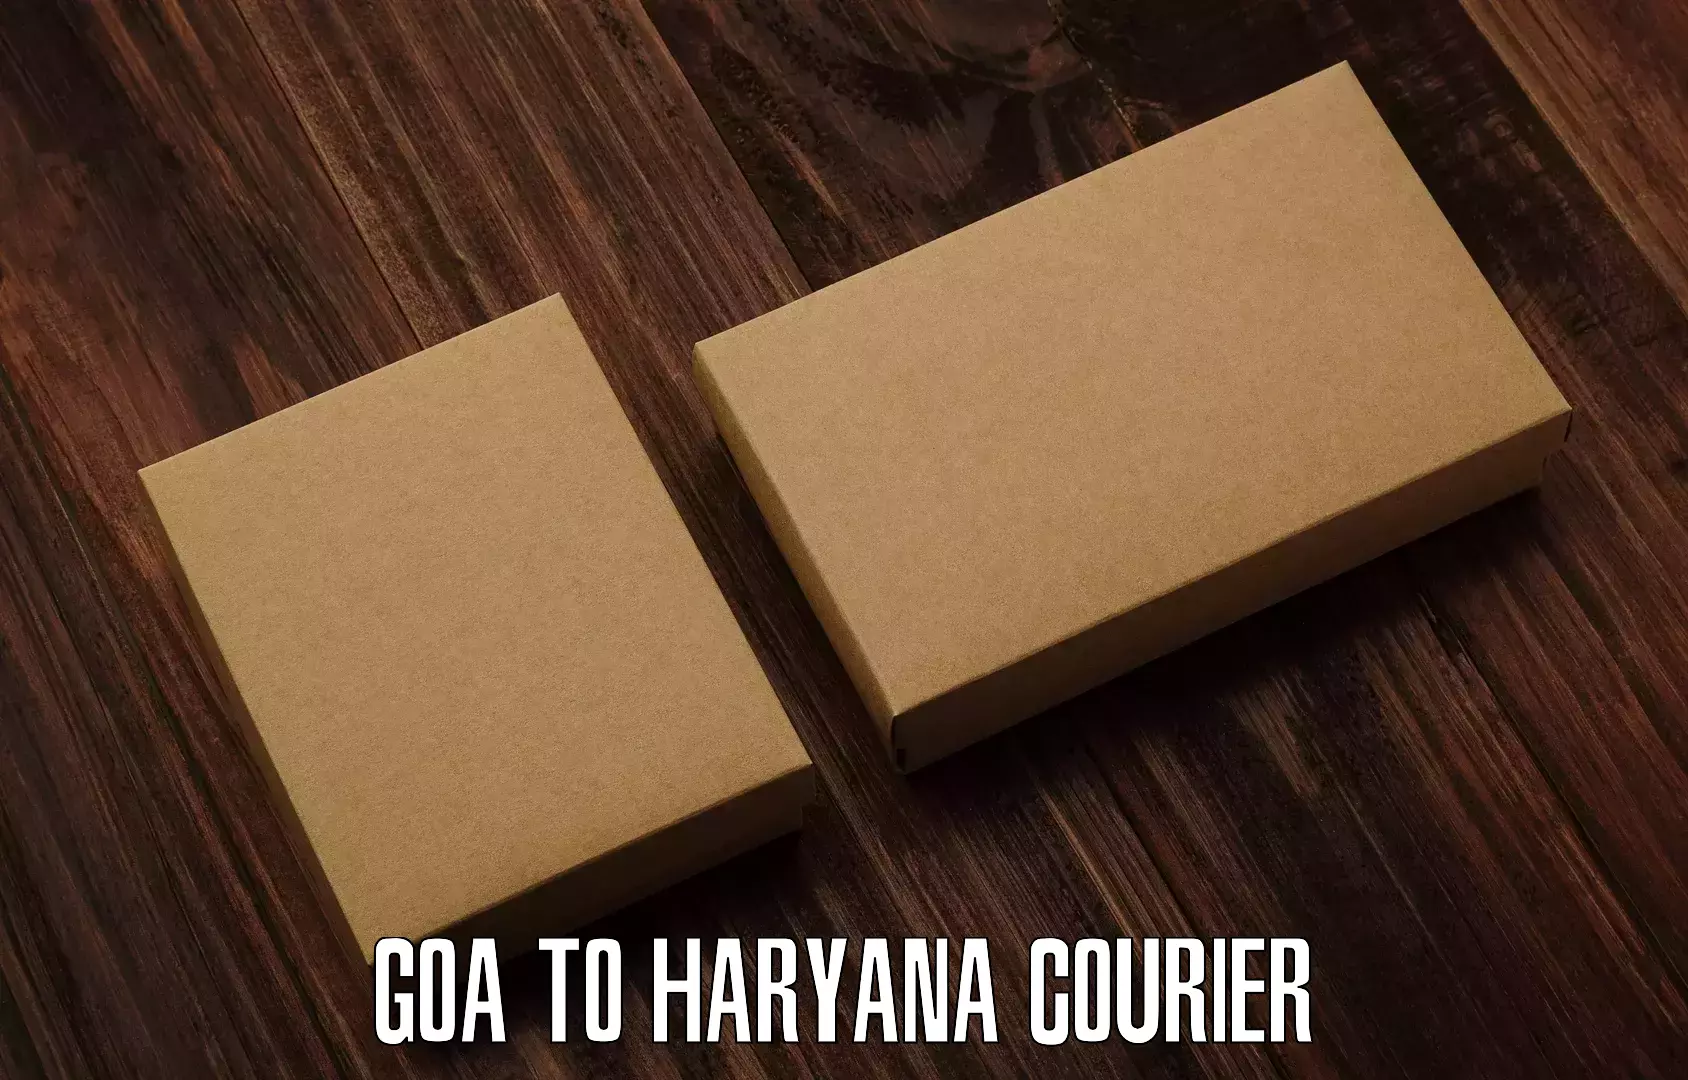 Logistics service provider Goa to Kurukshetra